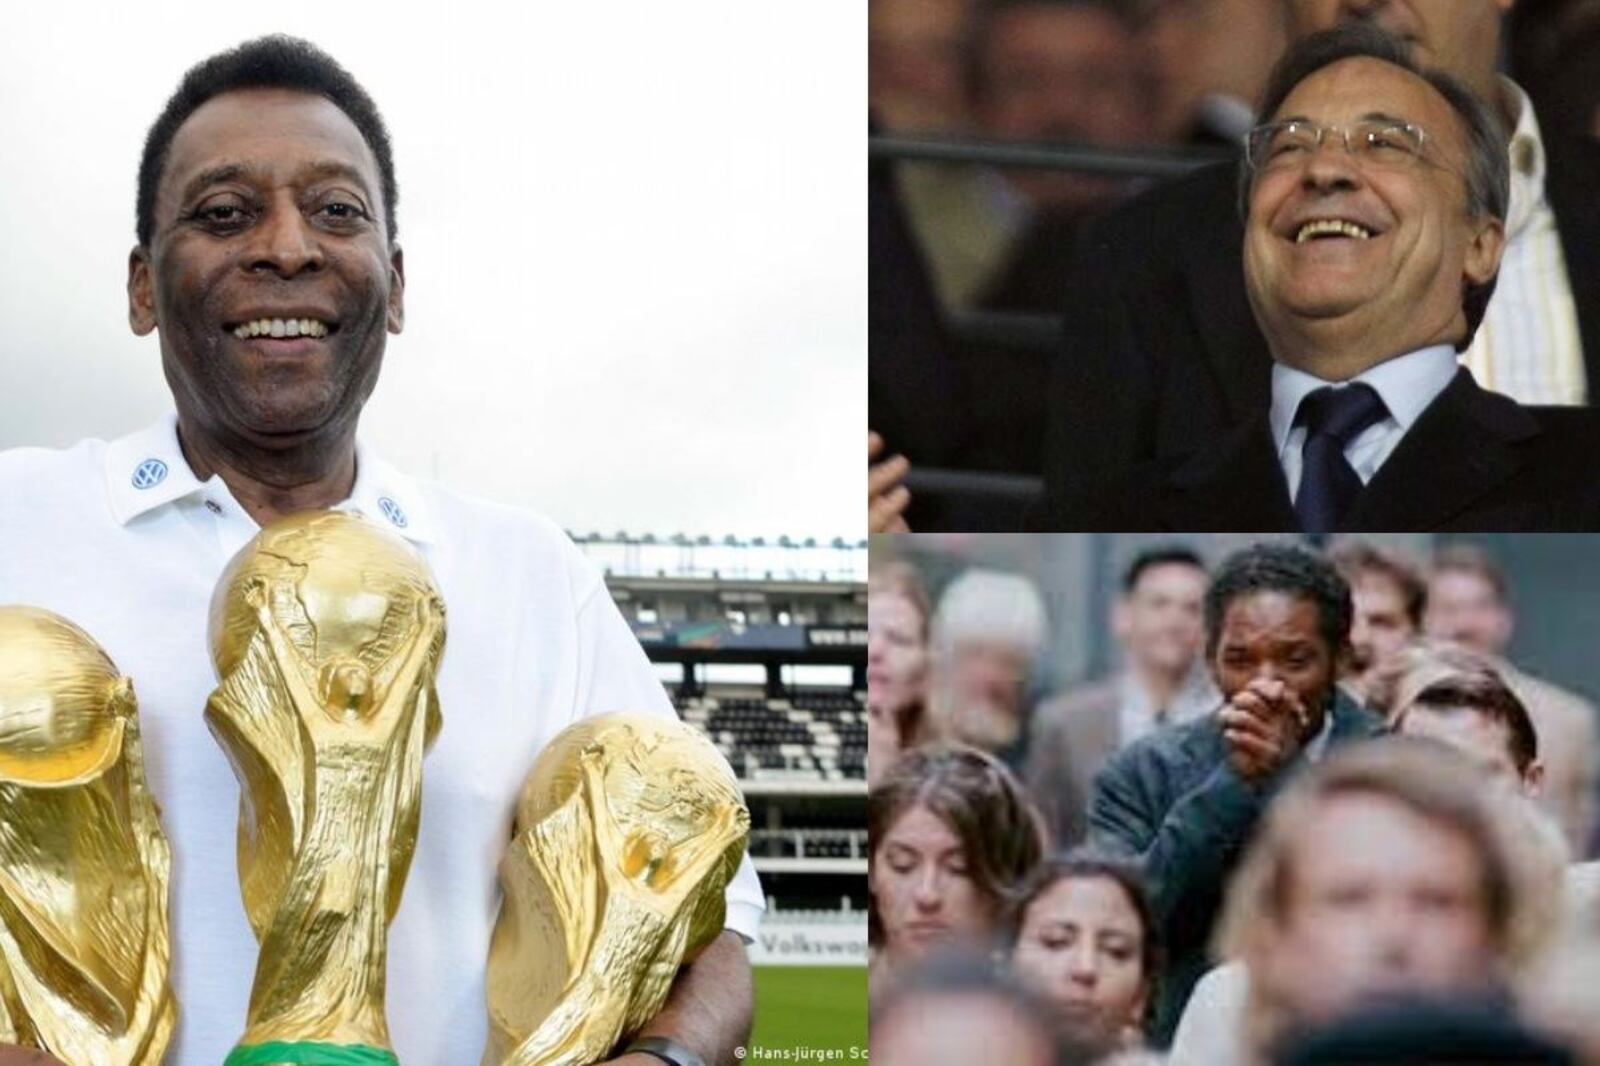 Le dicen el nuevo Pelé y los millones que pagó el Madrid, Florentino festeja